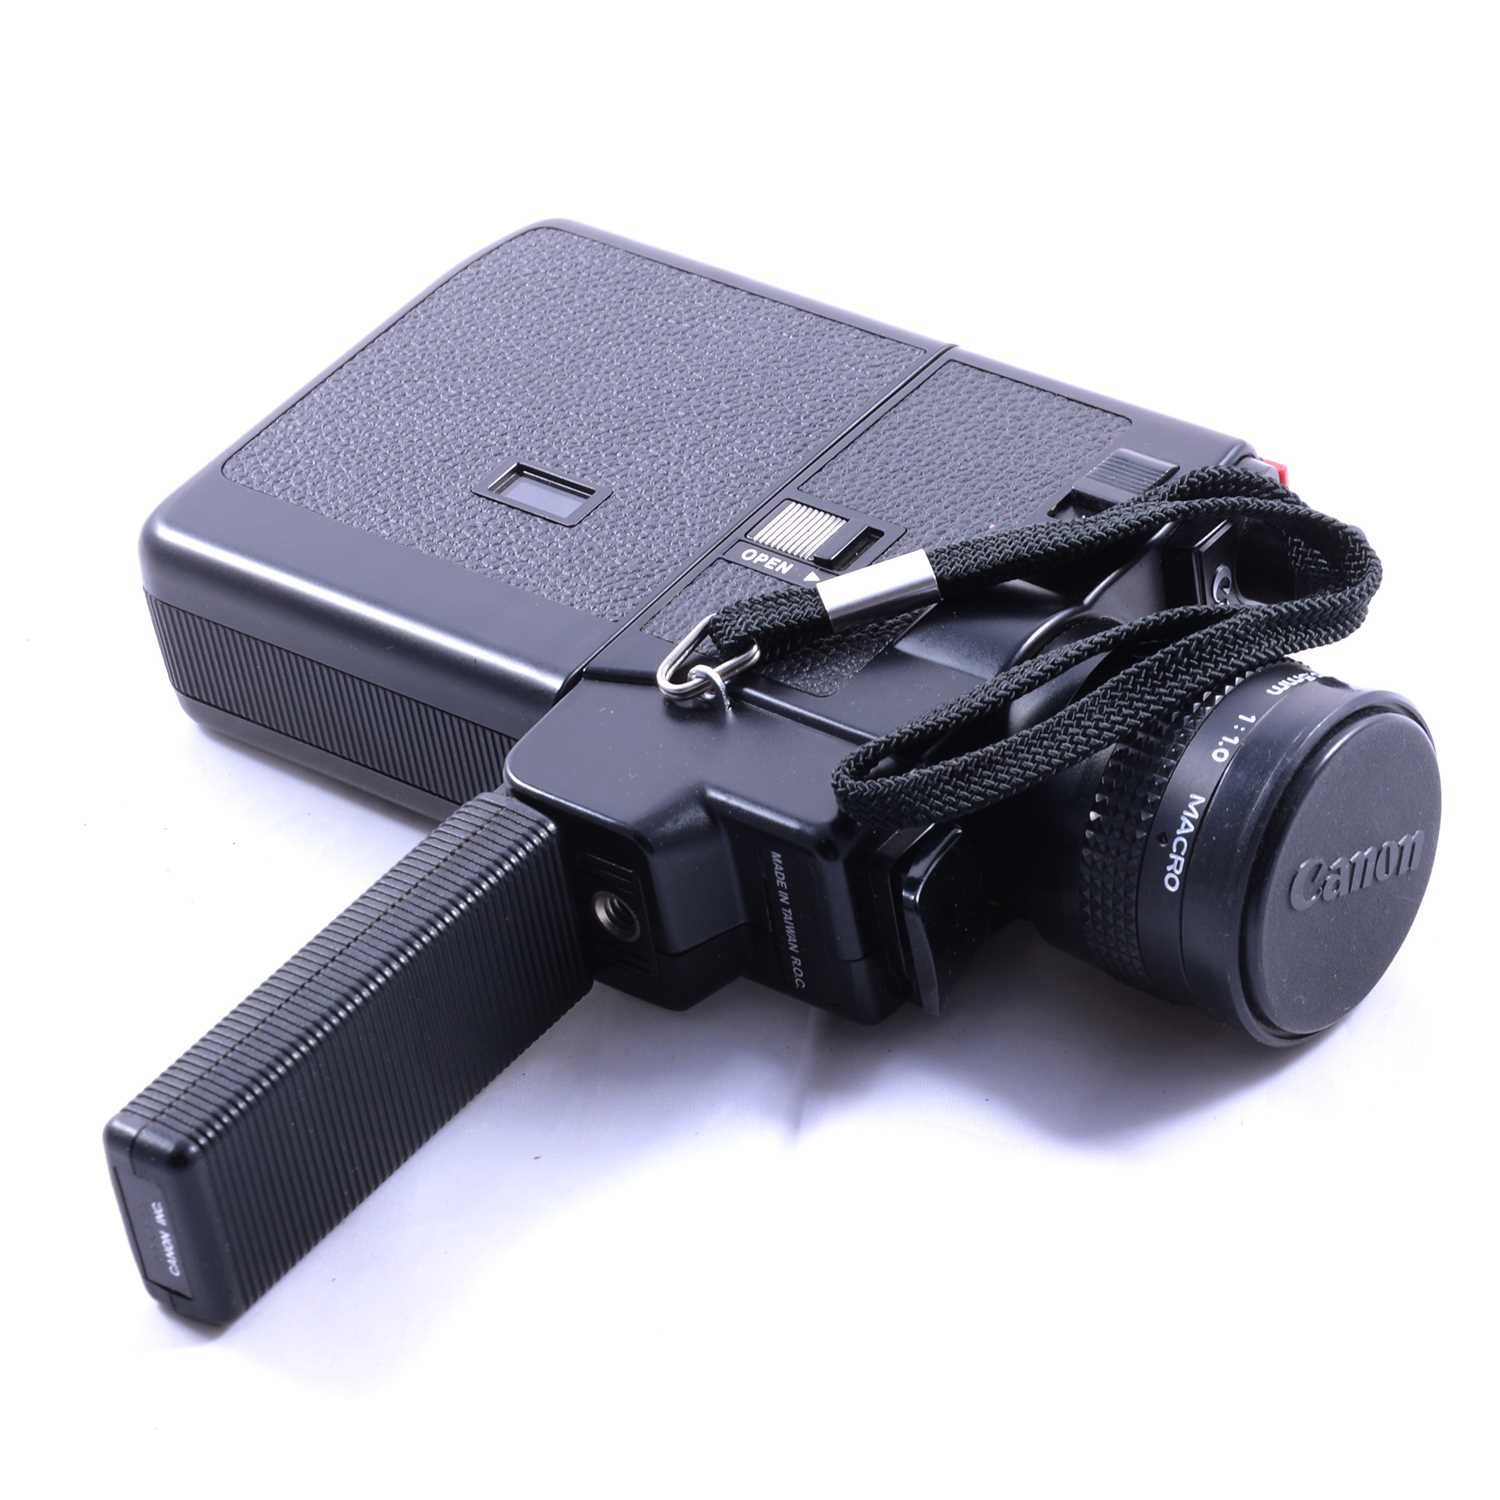 Canon 310XL Cine camera, a Chinon IQ4000 GL projector, and a screen